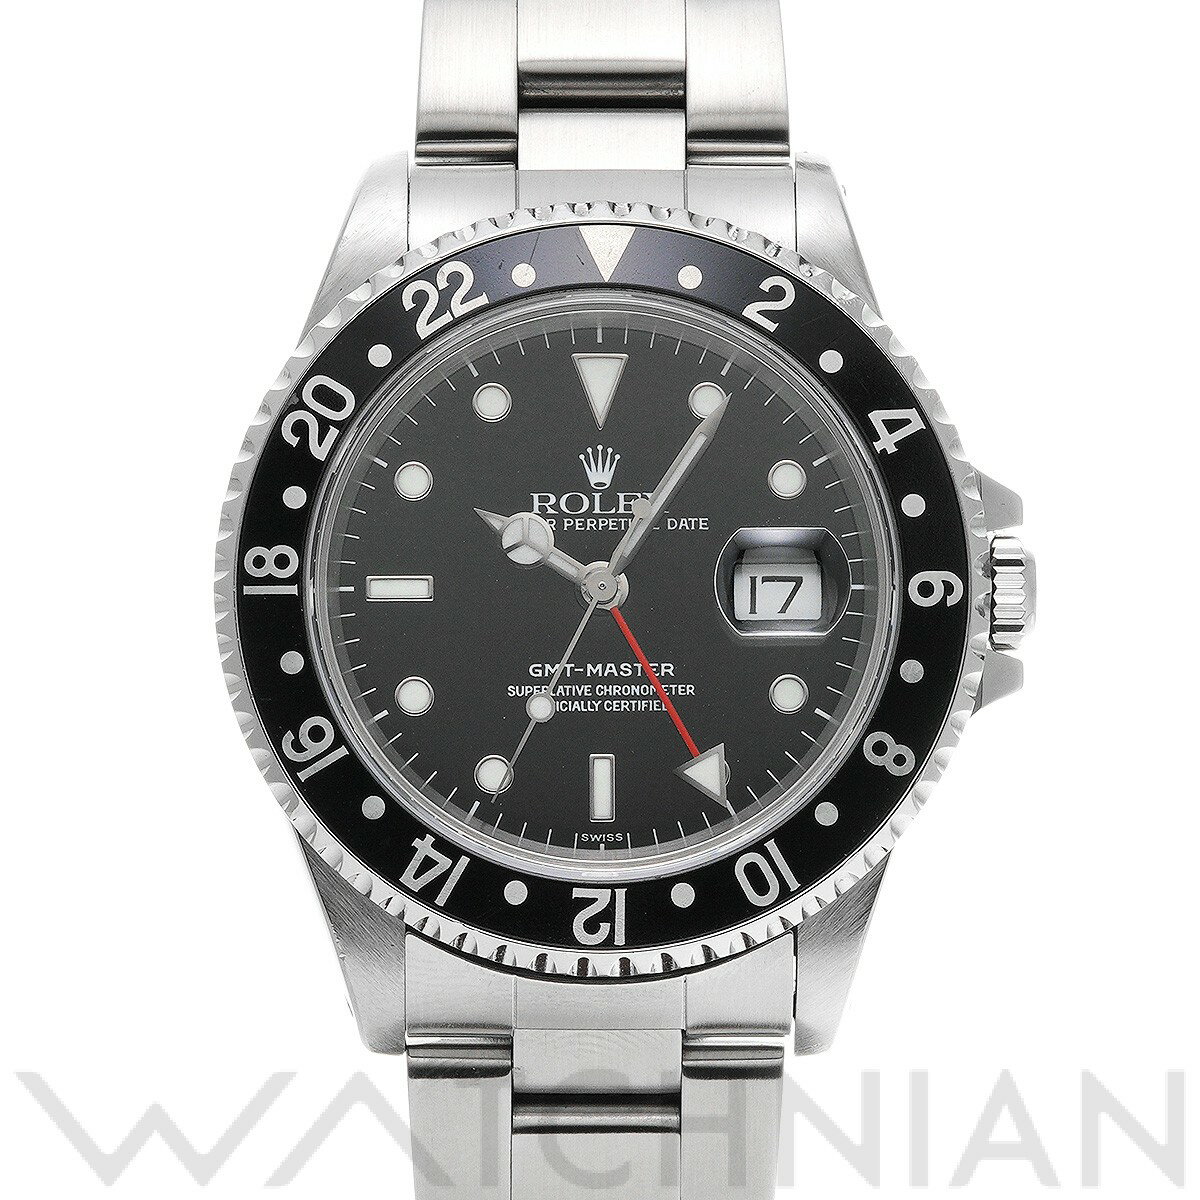 【4種選べるクーポン】【ローン60回払い無金利】【中古】 ロレックス ROLEX GMTマスター 16700 A番(1999年頃製造) ブラック メンズ 腕時計